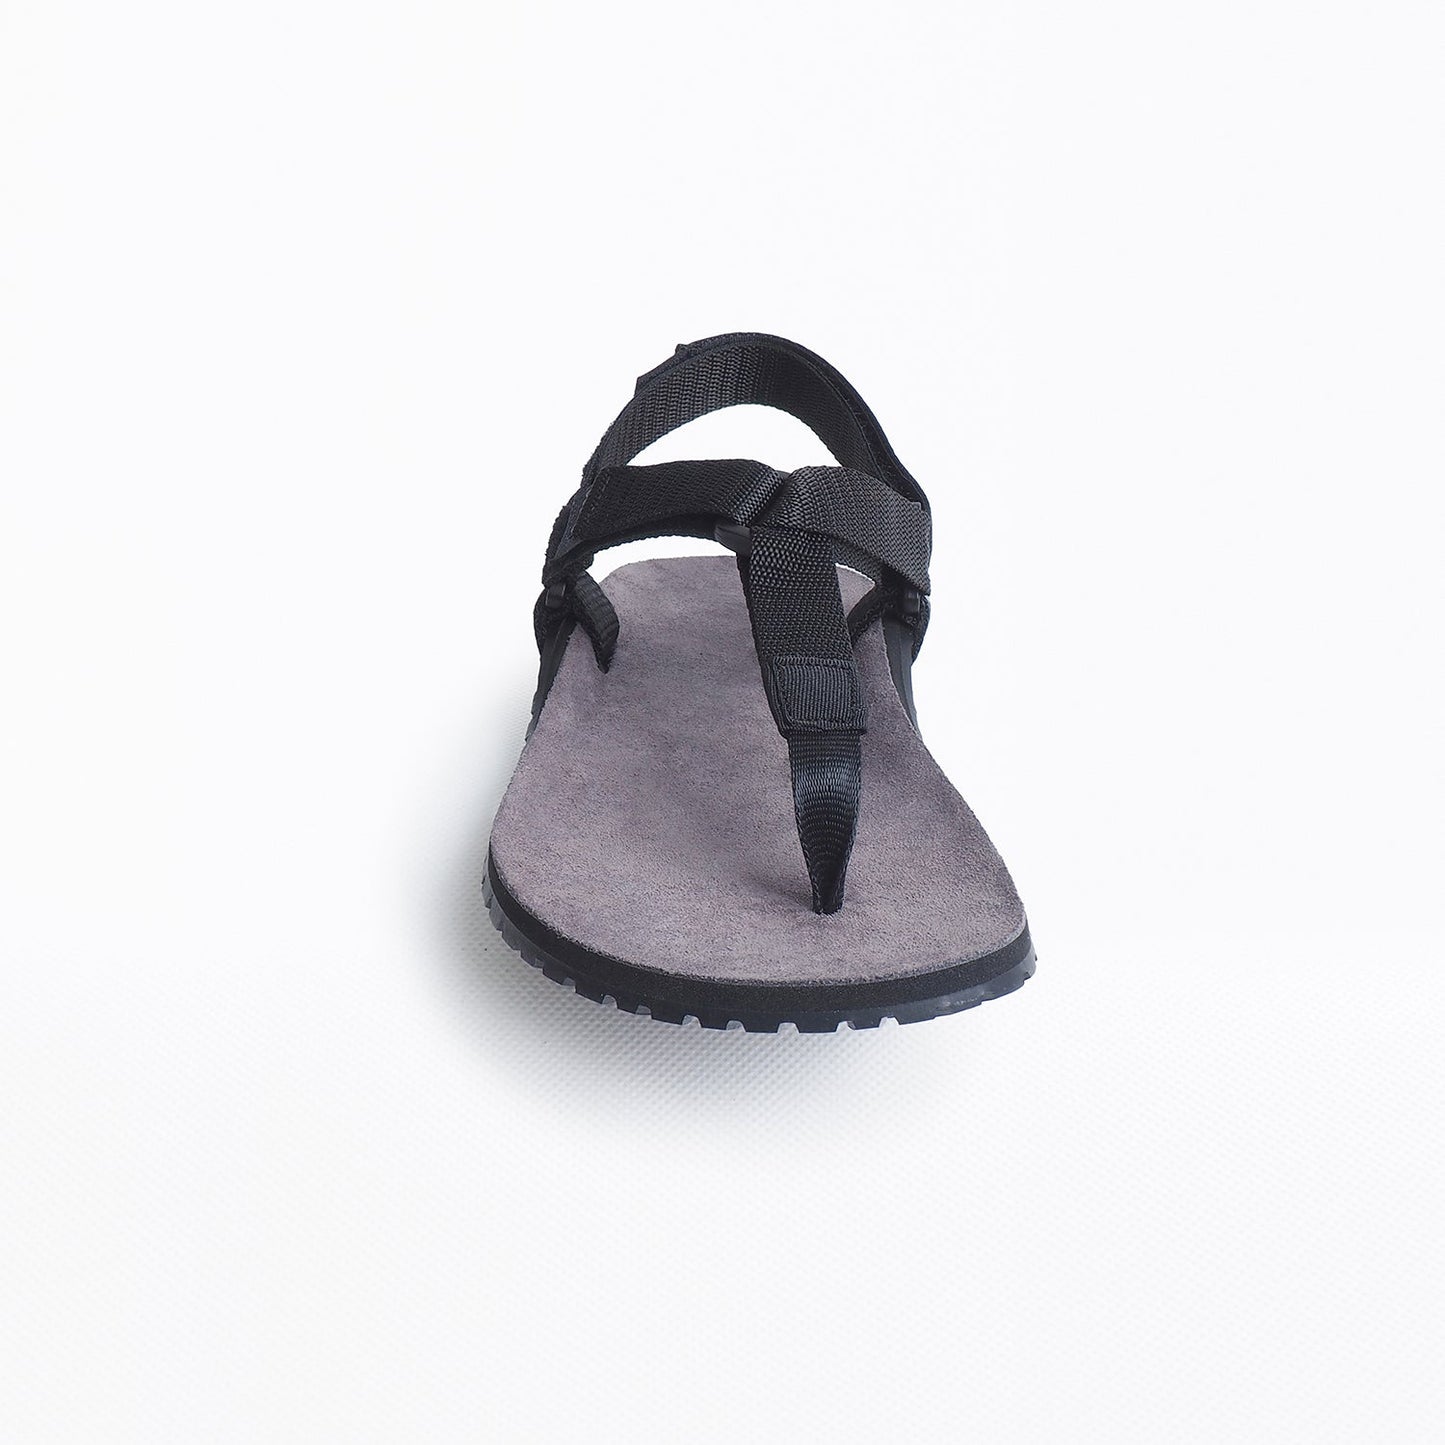 Bosky Performance Leather barfods sandaler til kvinder og mænd i farven black, forfra